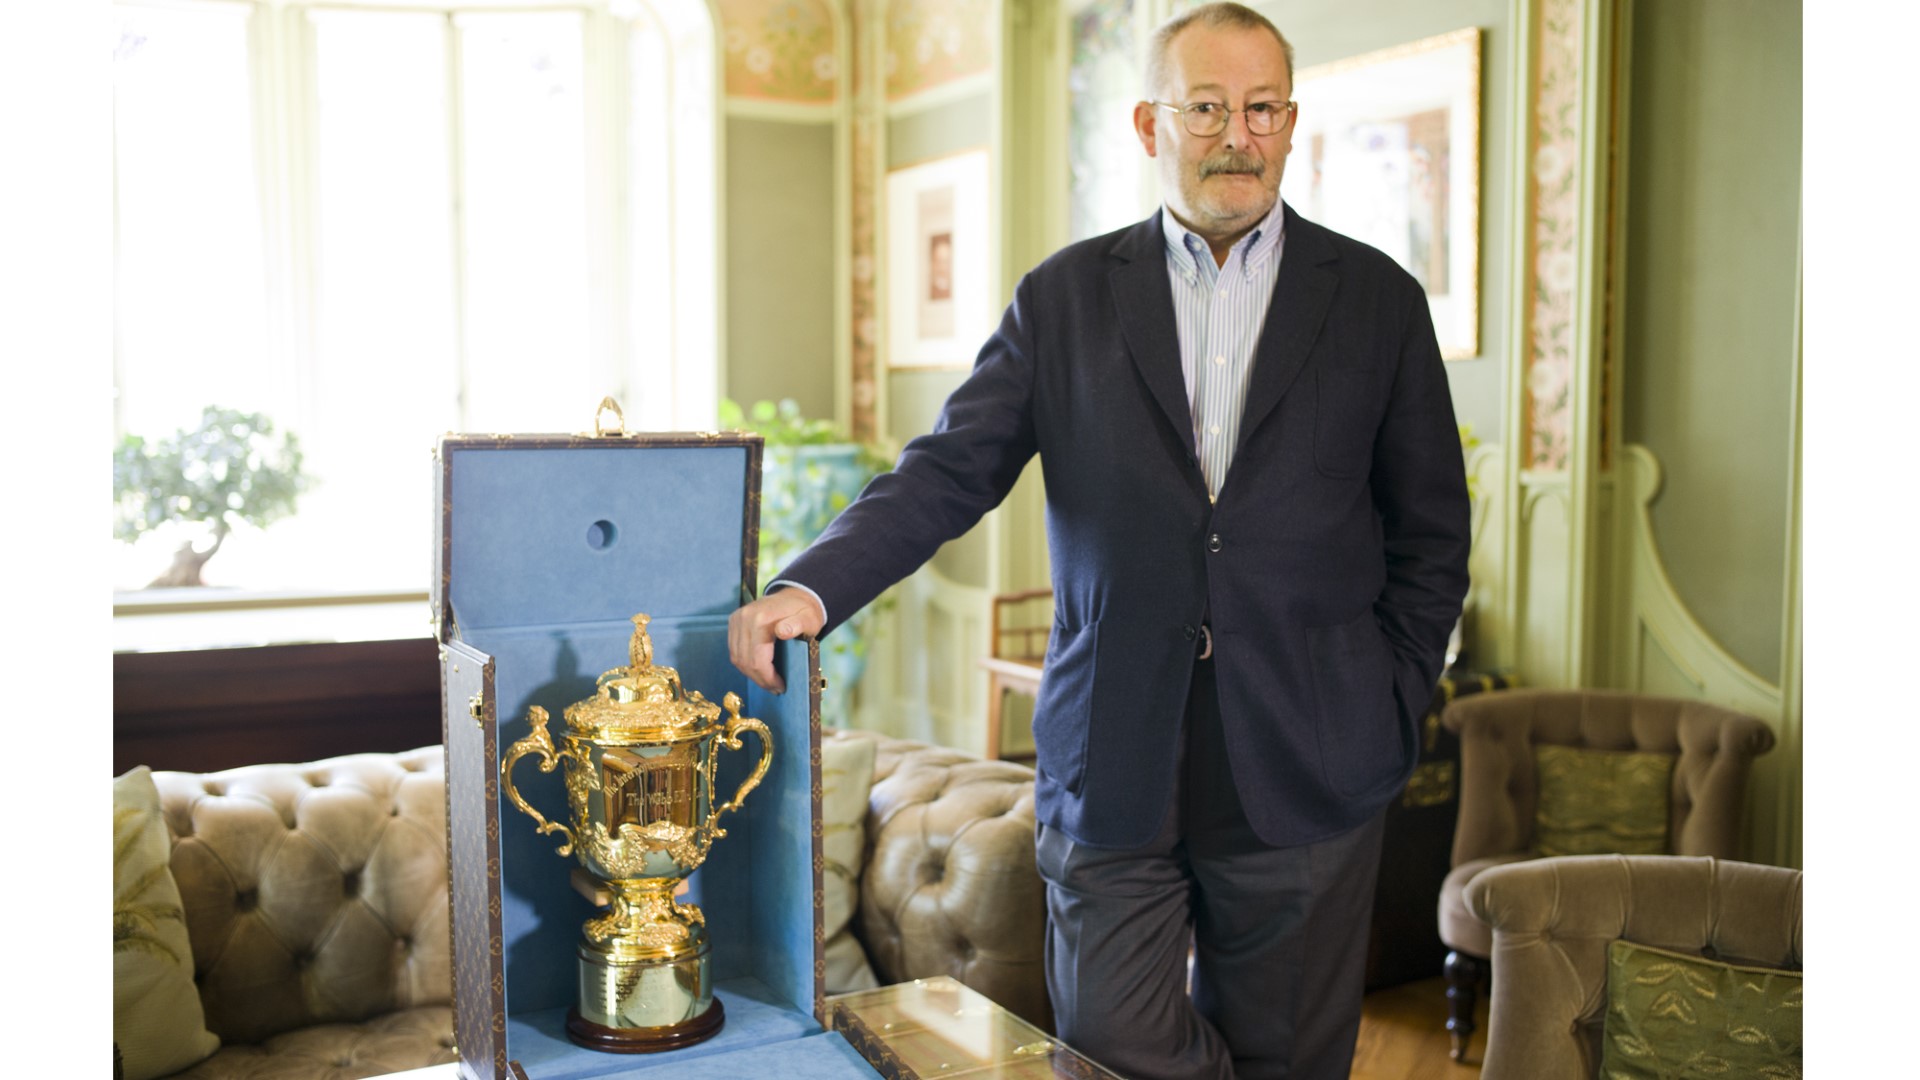 Rugby World Cup 2015: lo speciale baule per contenere la famosa Coppa Webb Ellis, le foto